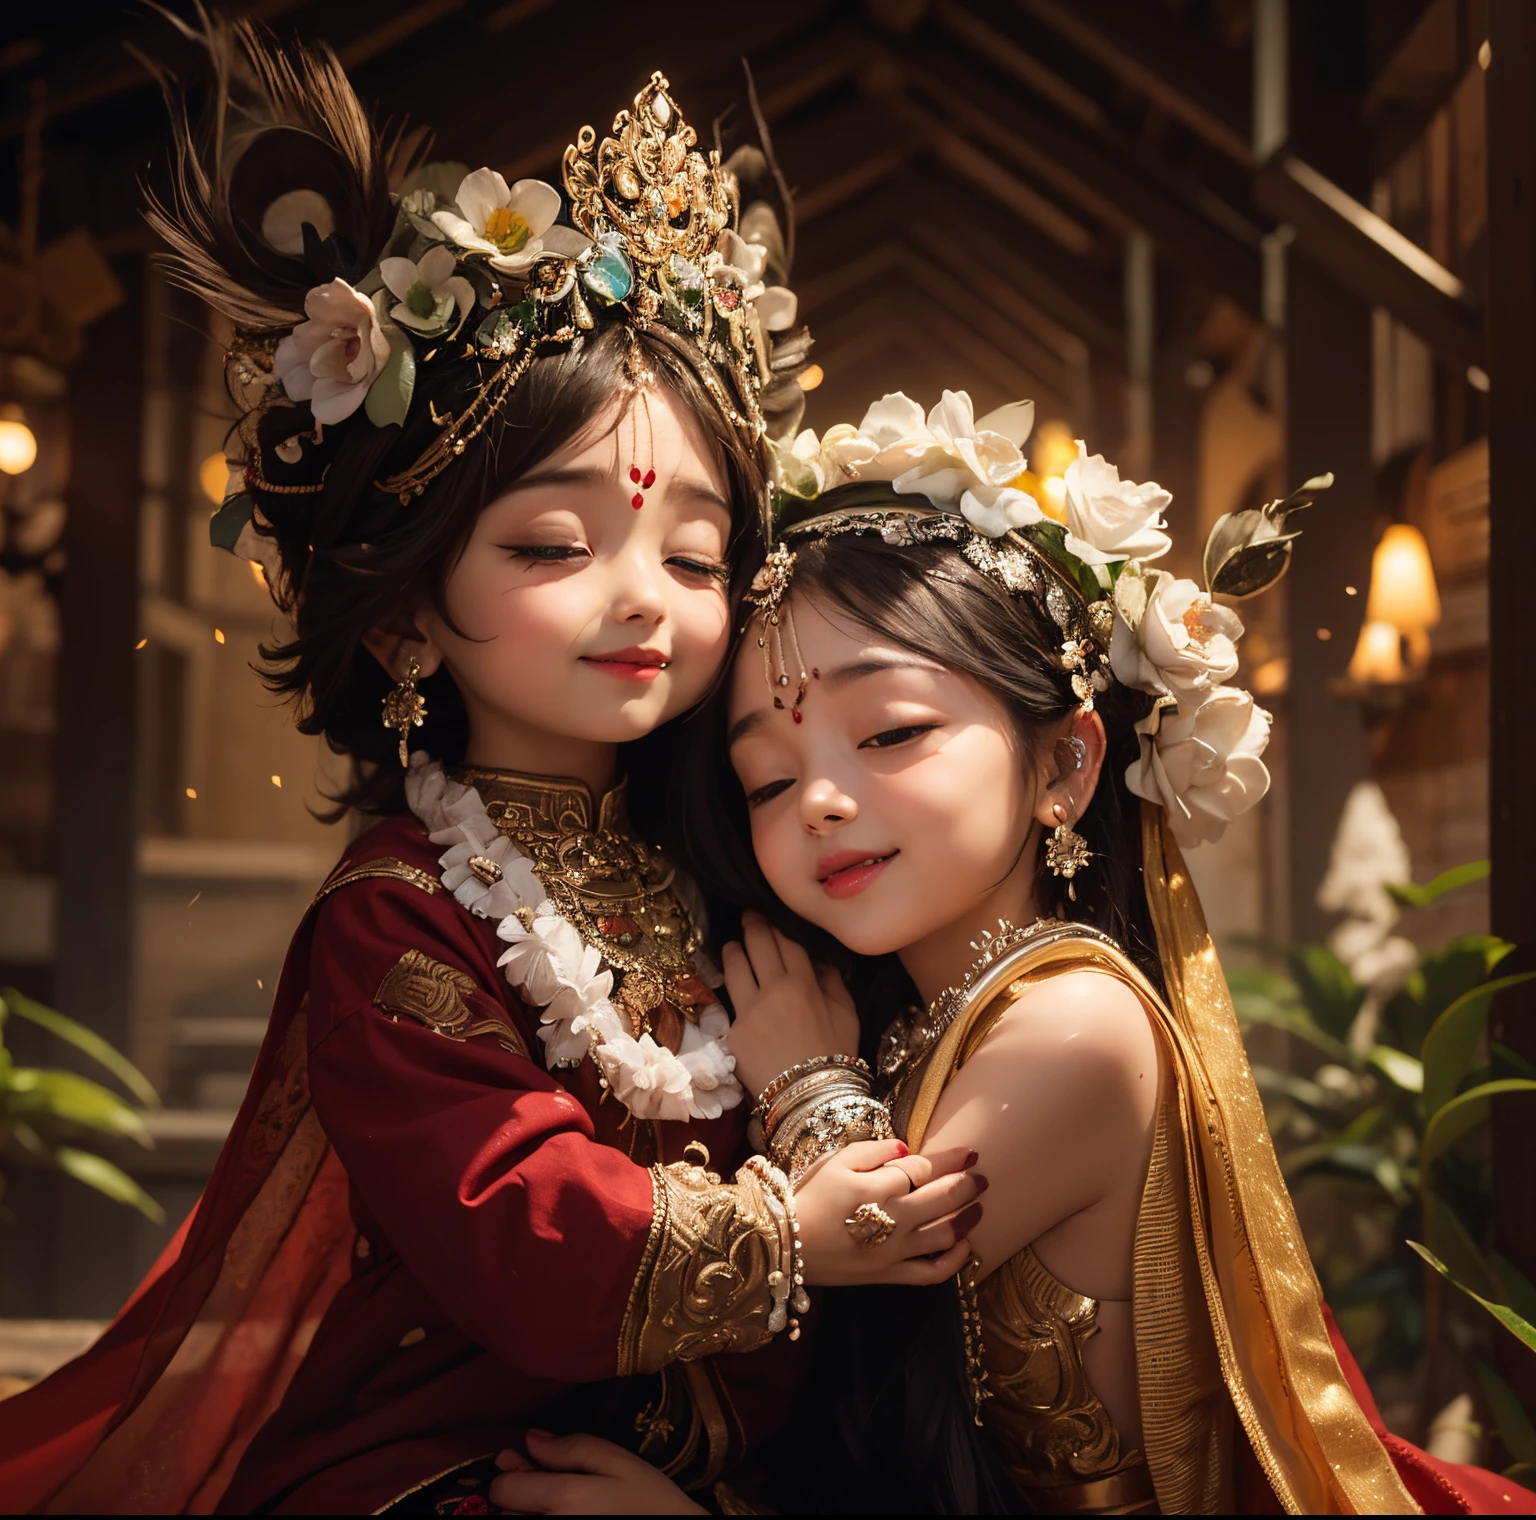 Krishna und Radha , Kinderfigur 3 Jahre alt, hintergrund schwarz und weiß berg eis,